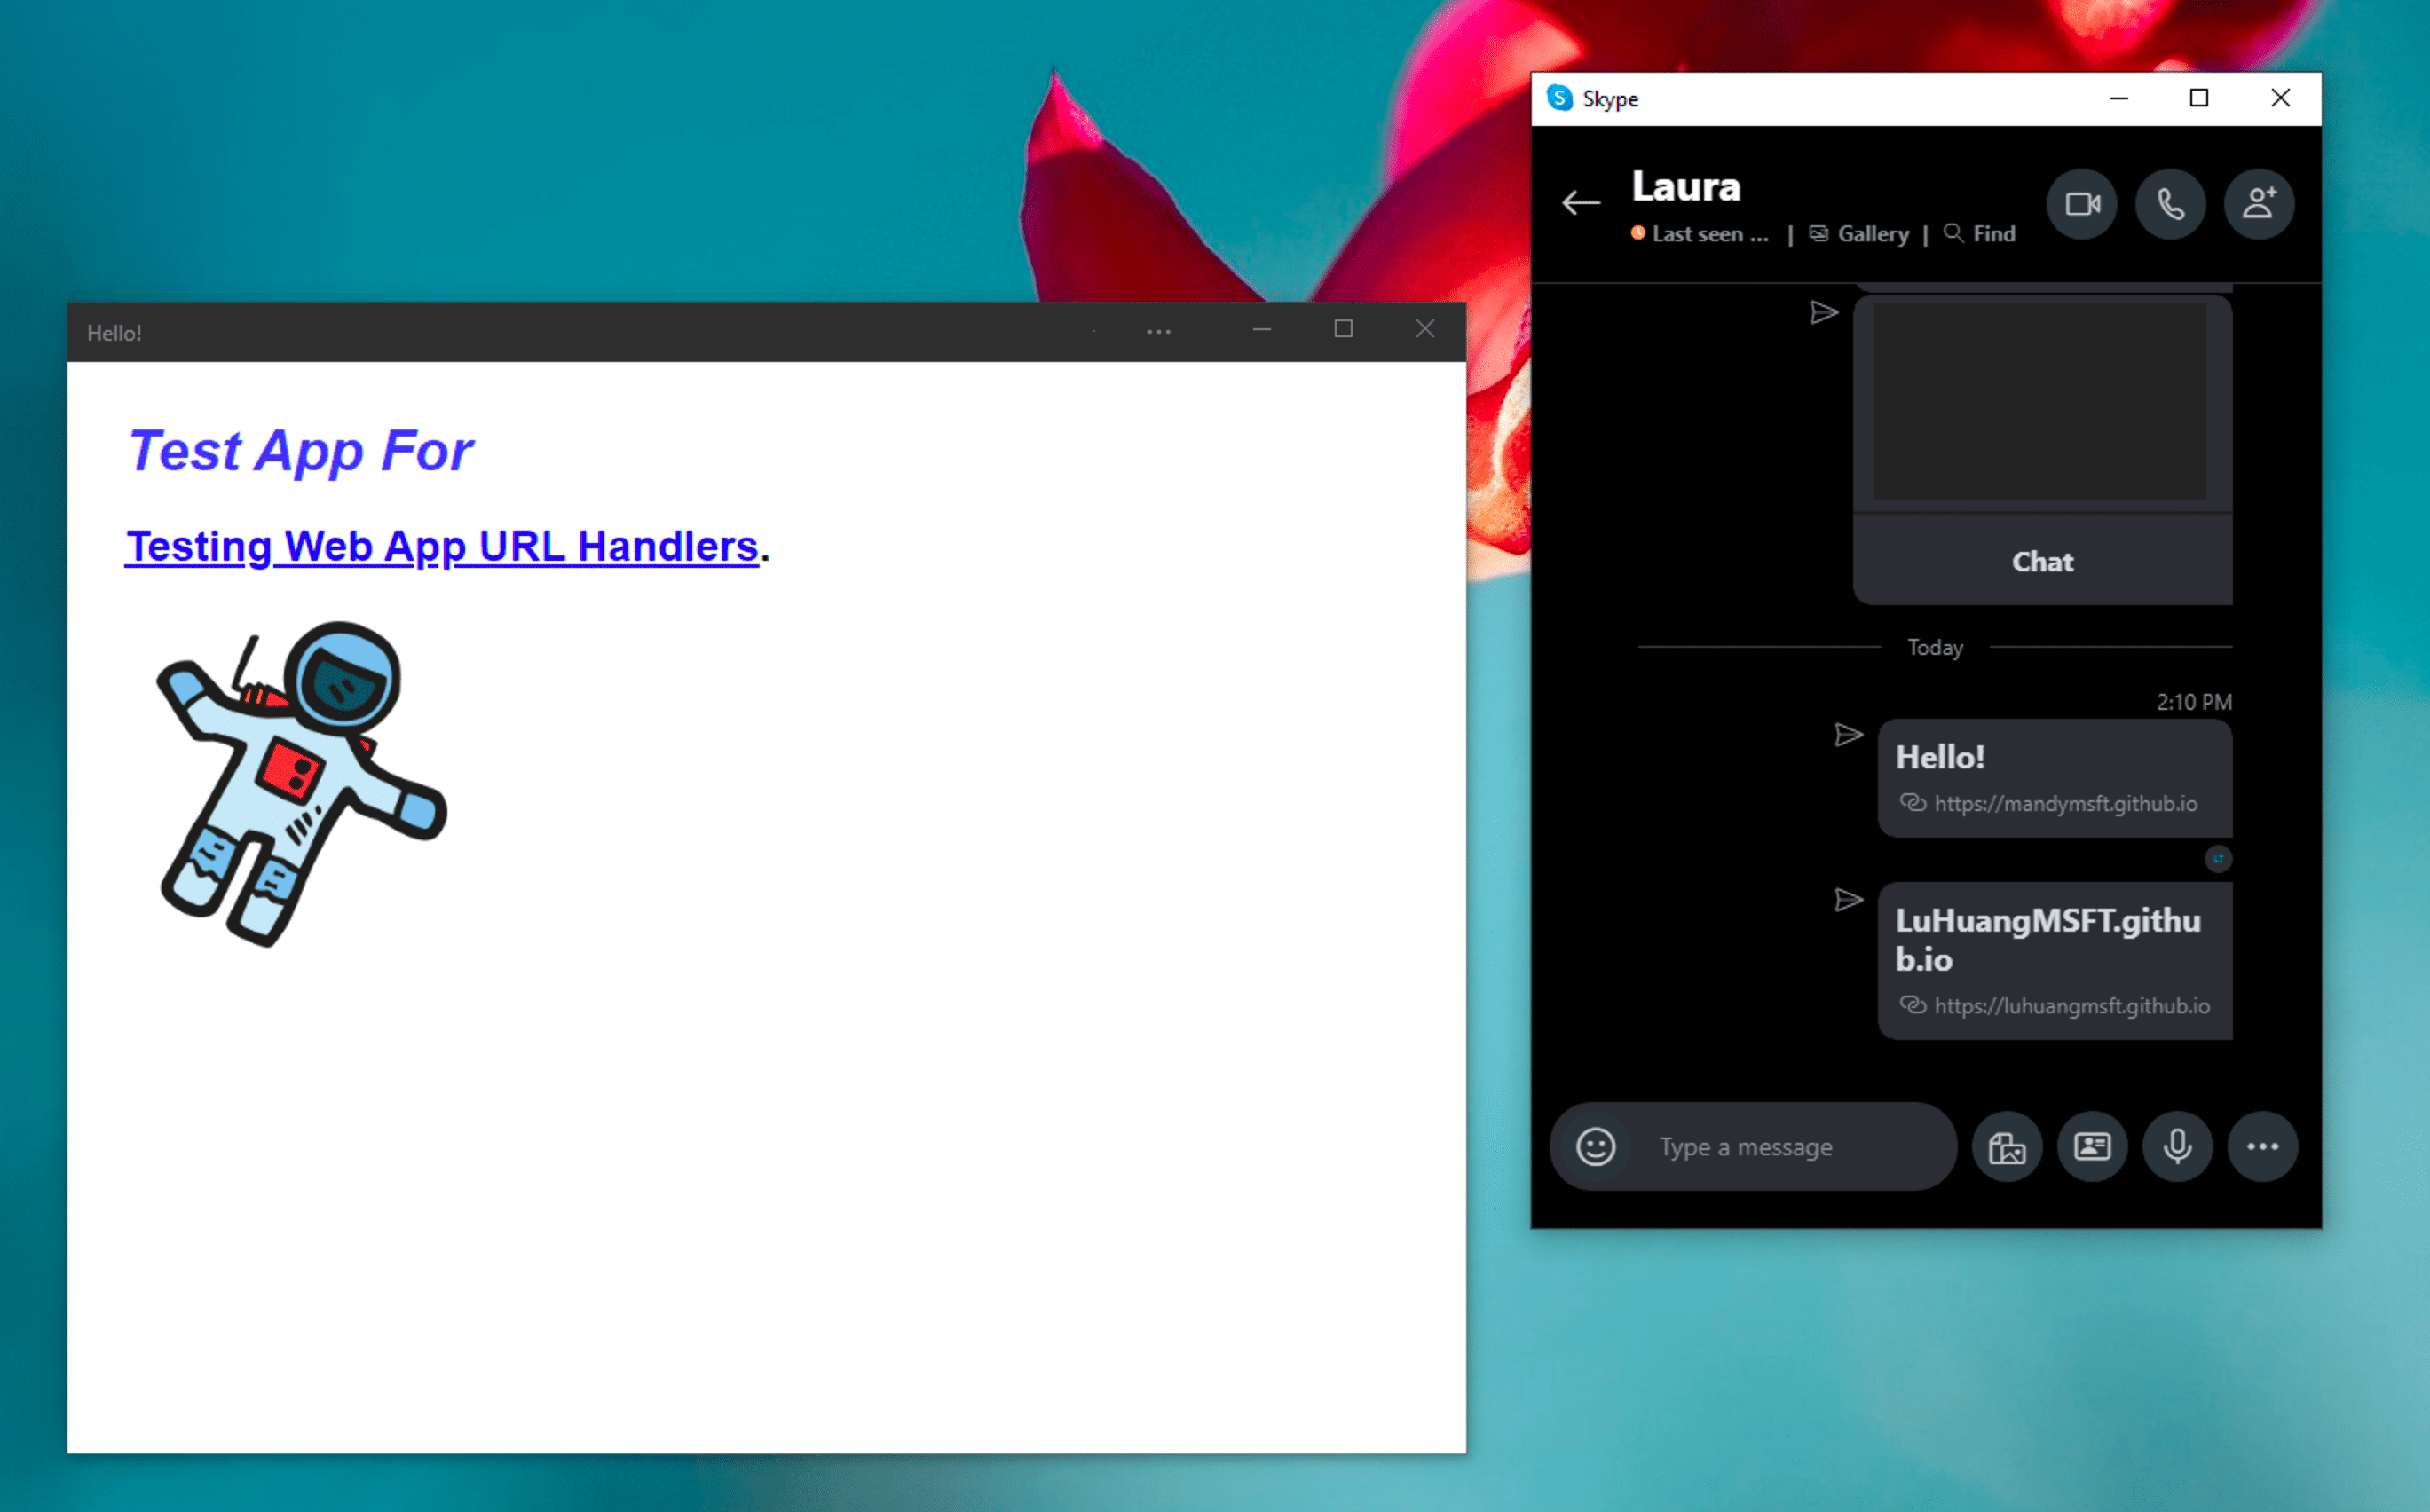 แอป Windows Skype Instant Messenger อยู่ข้าง PWA สาธิตที่ติดตั้งไว้ ซึ่งจะเปิดขึ้นในโหมดสแตนด์อโลนหลังจากคลิกลิงก์ที่อยู่ในข้อความแชทของ Skype